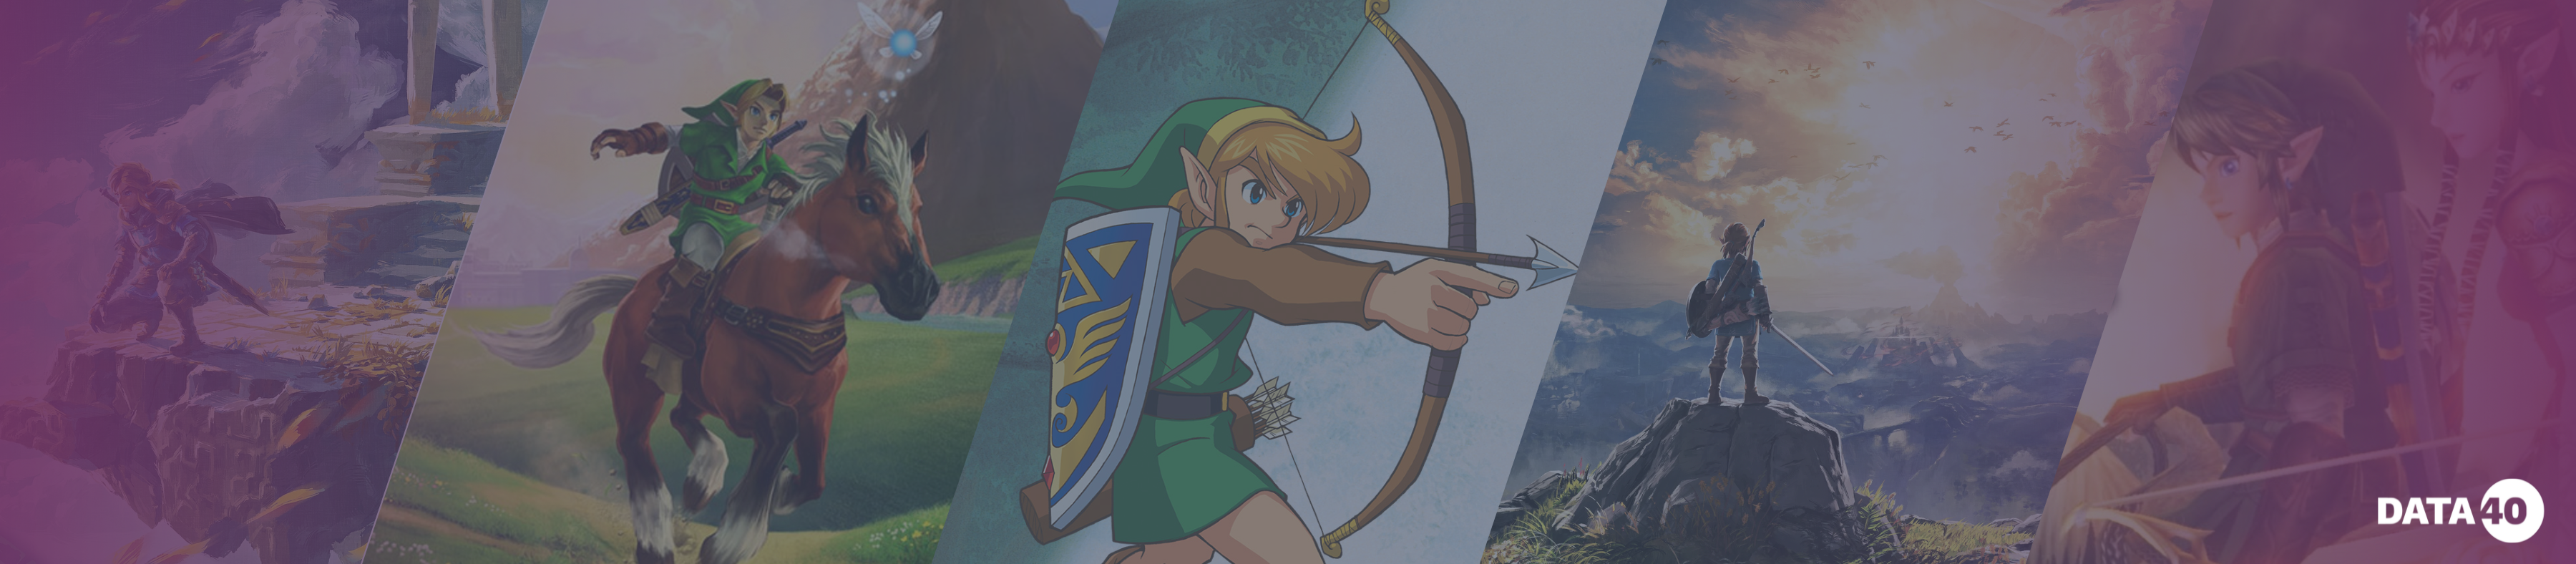 Best Selling Zelda Games: Ranked by Sales